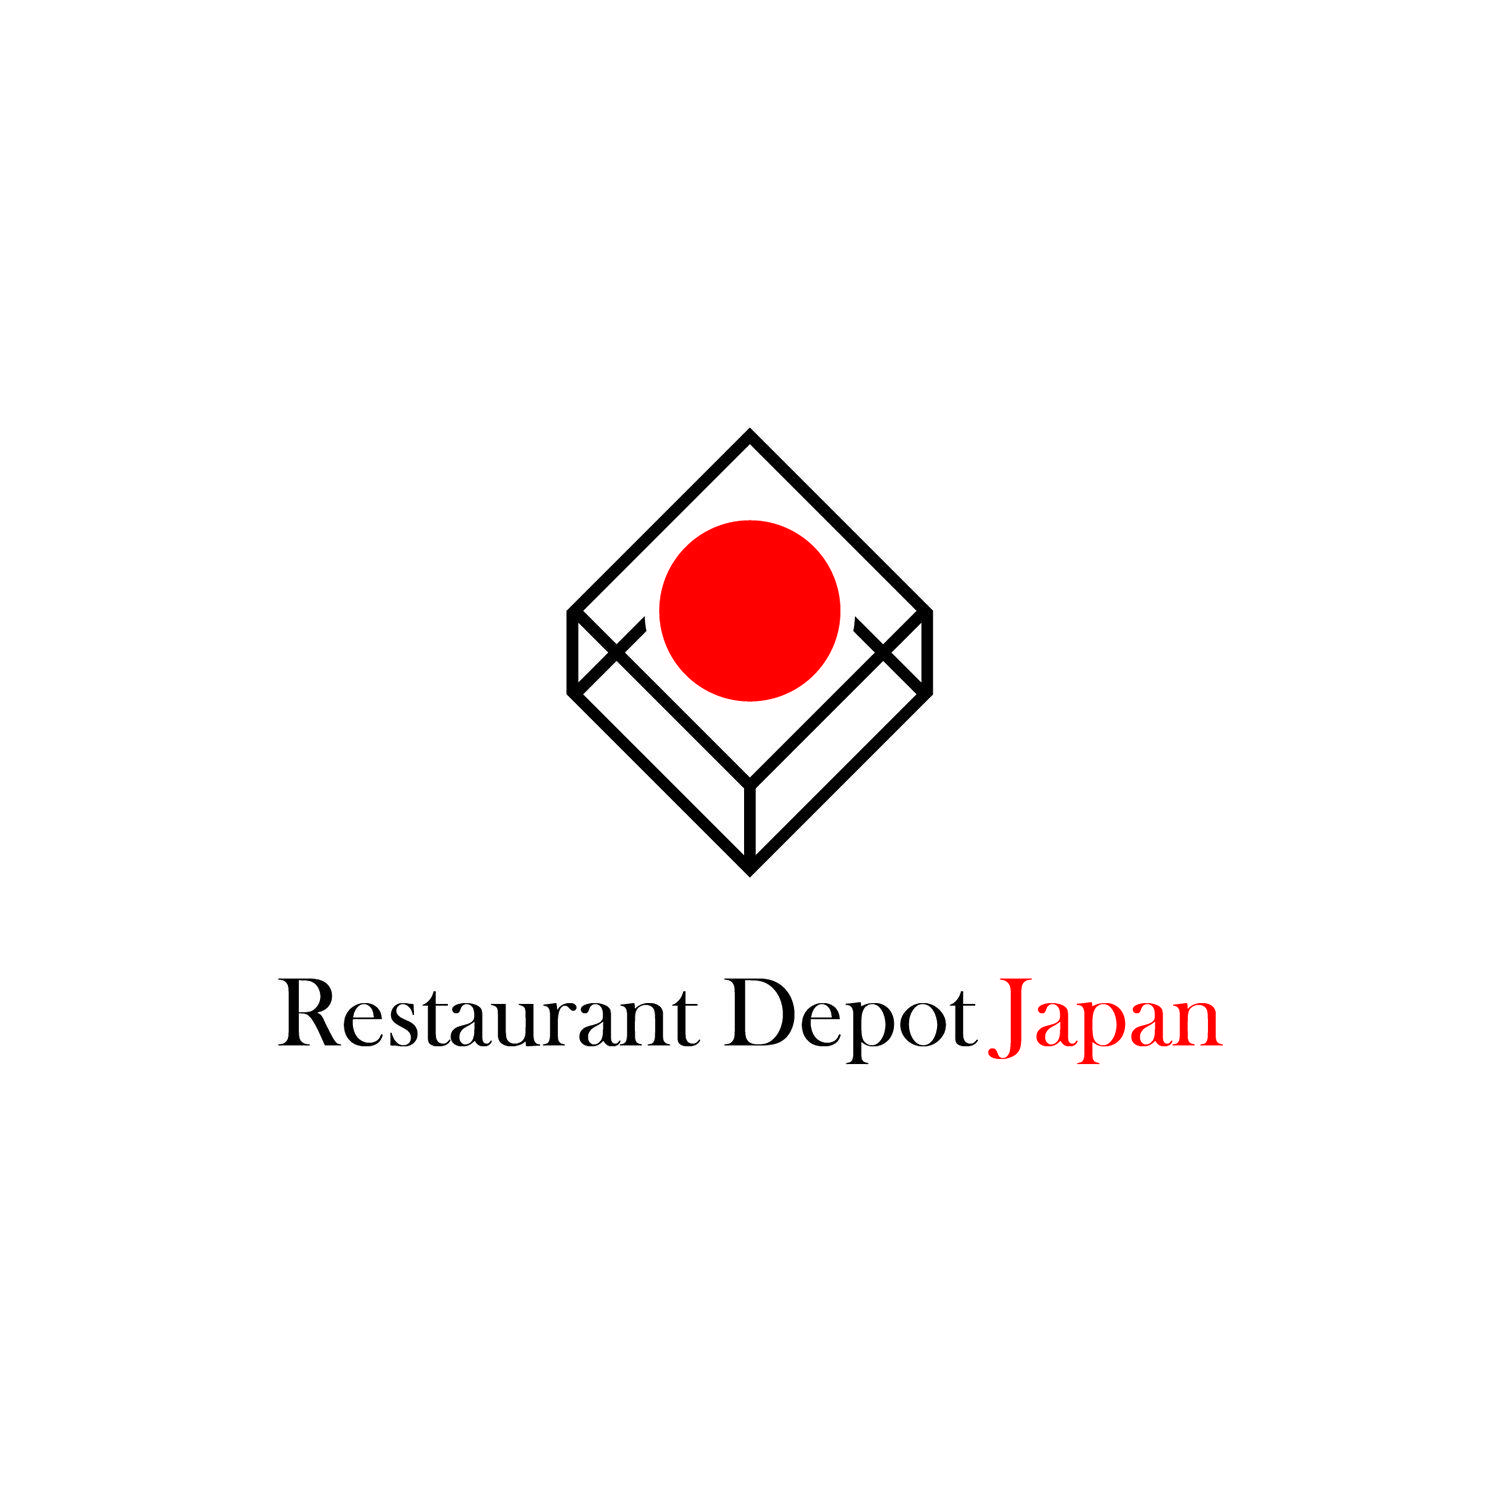 Lavin Logo - Elegant, Playful, Food Store Logo Design for Restaurant Depot Japan